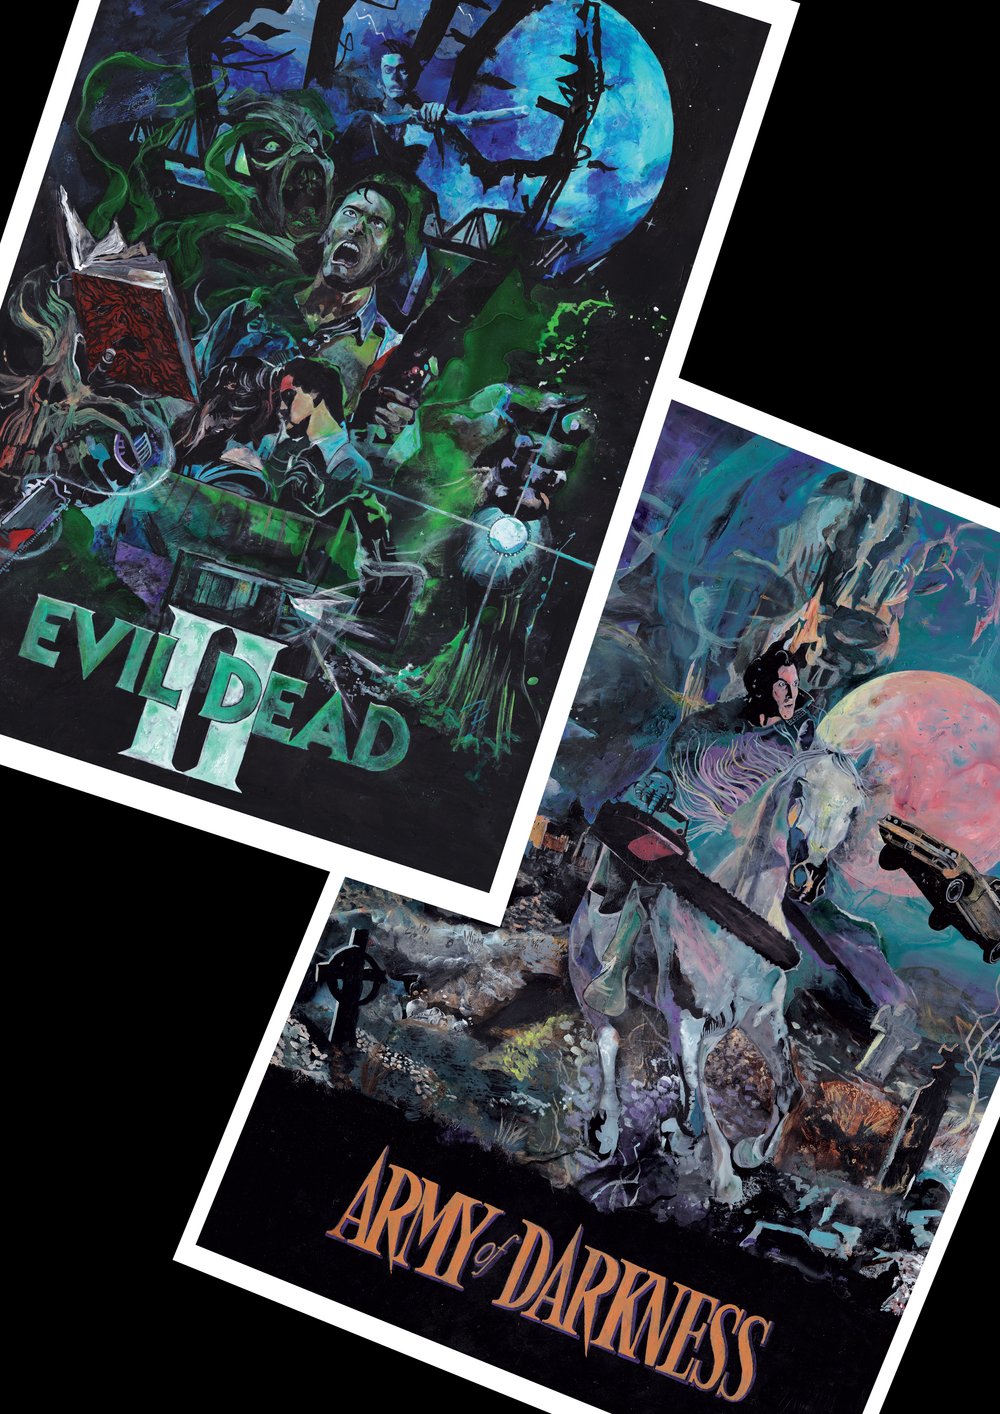 The Evil Dead — Dom Bittner Movie Prints